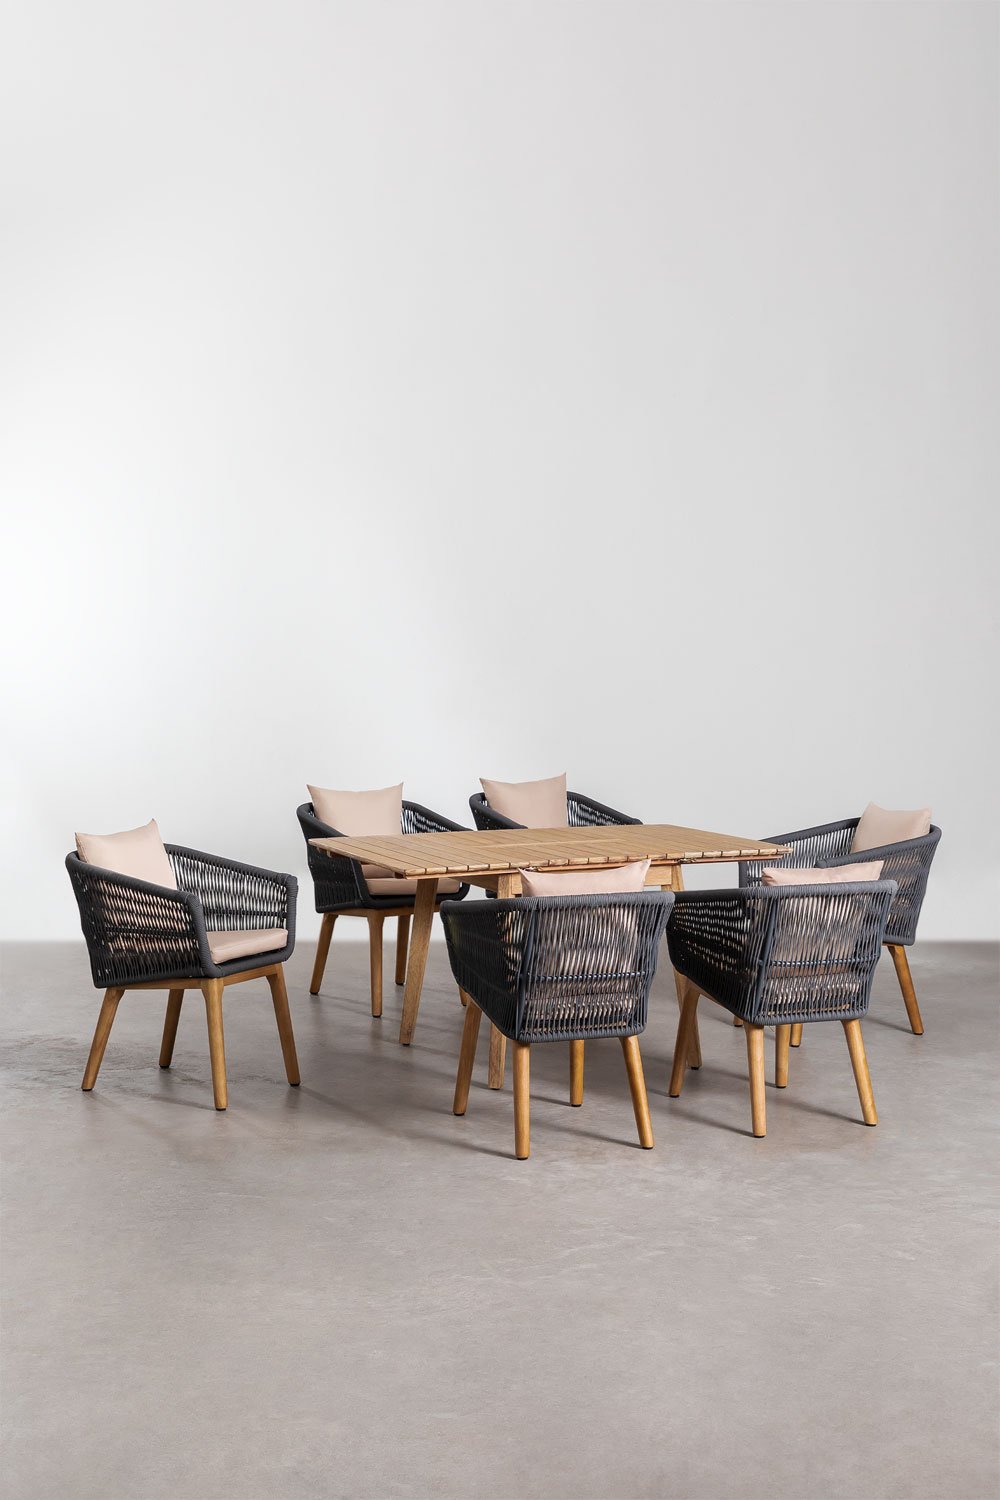 Houten uitschuifbare tafelset (90-150x90 cm) Naele en 6 Barker tuinstoelen, galerij beeld 1